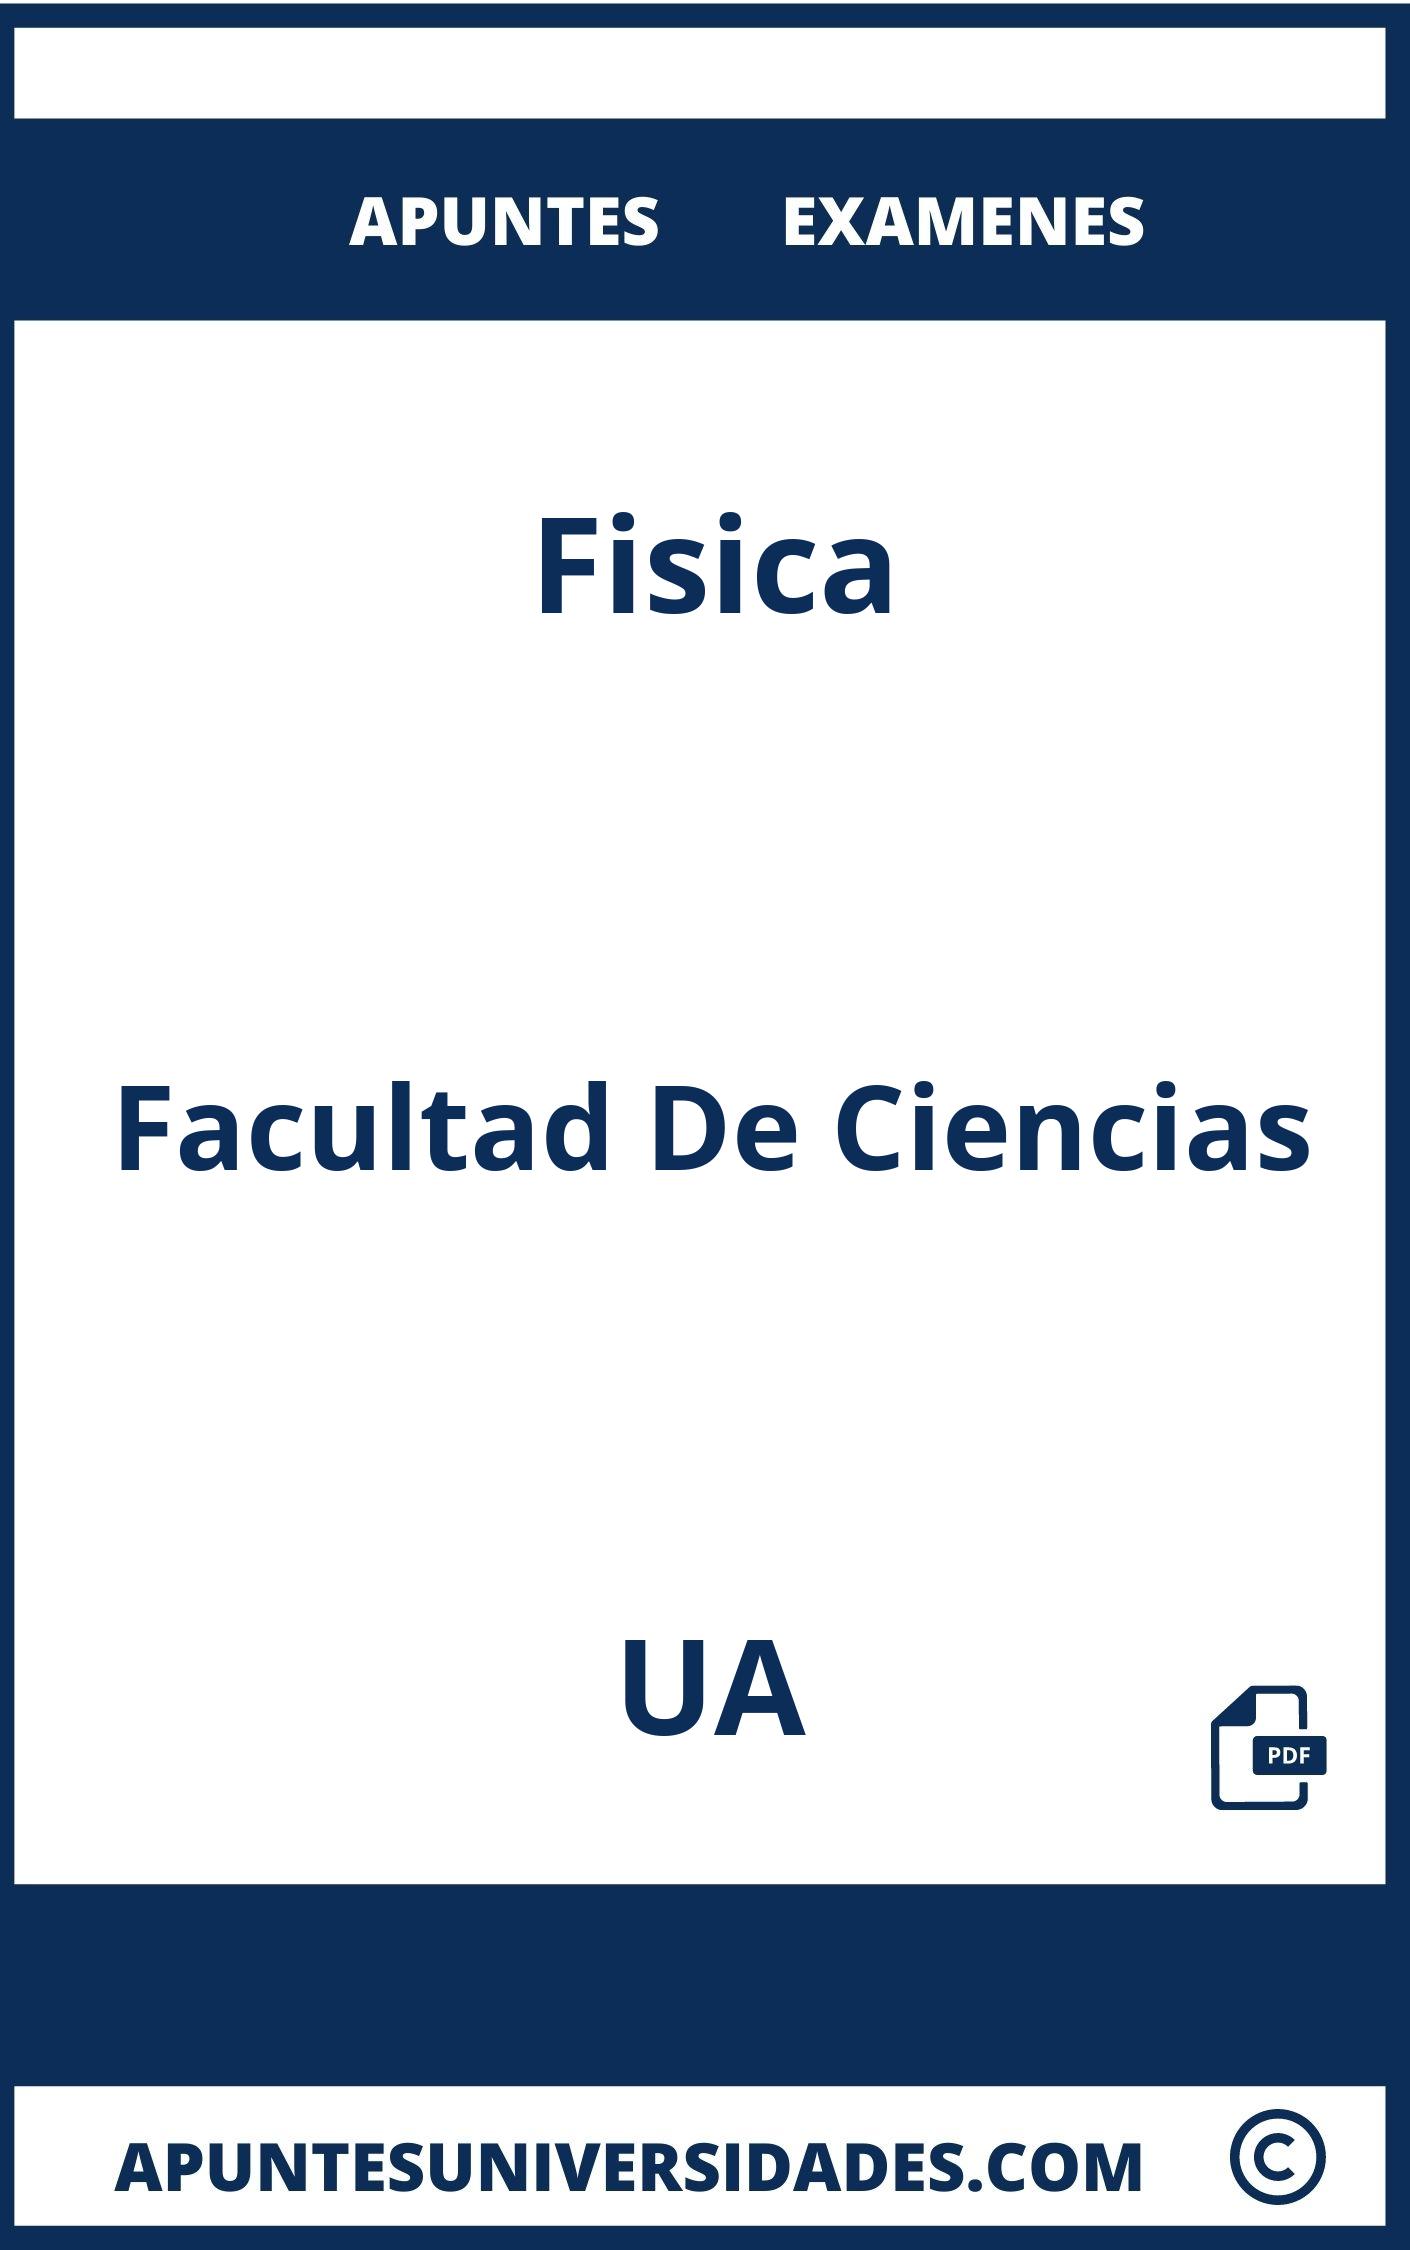 Examenes y Apuntes de Fisica UA